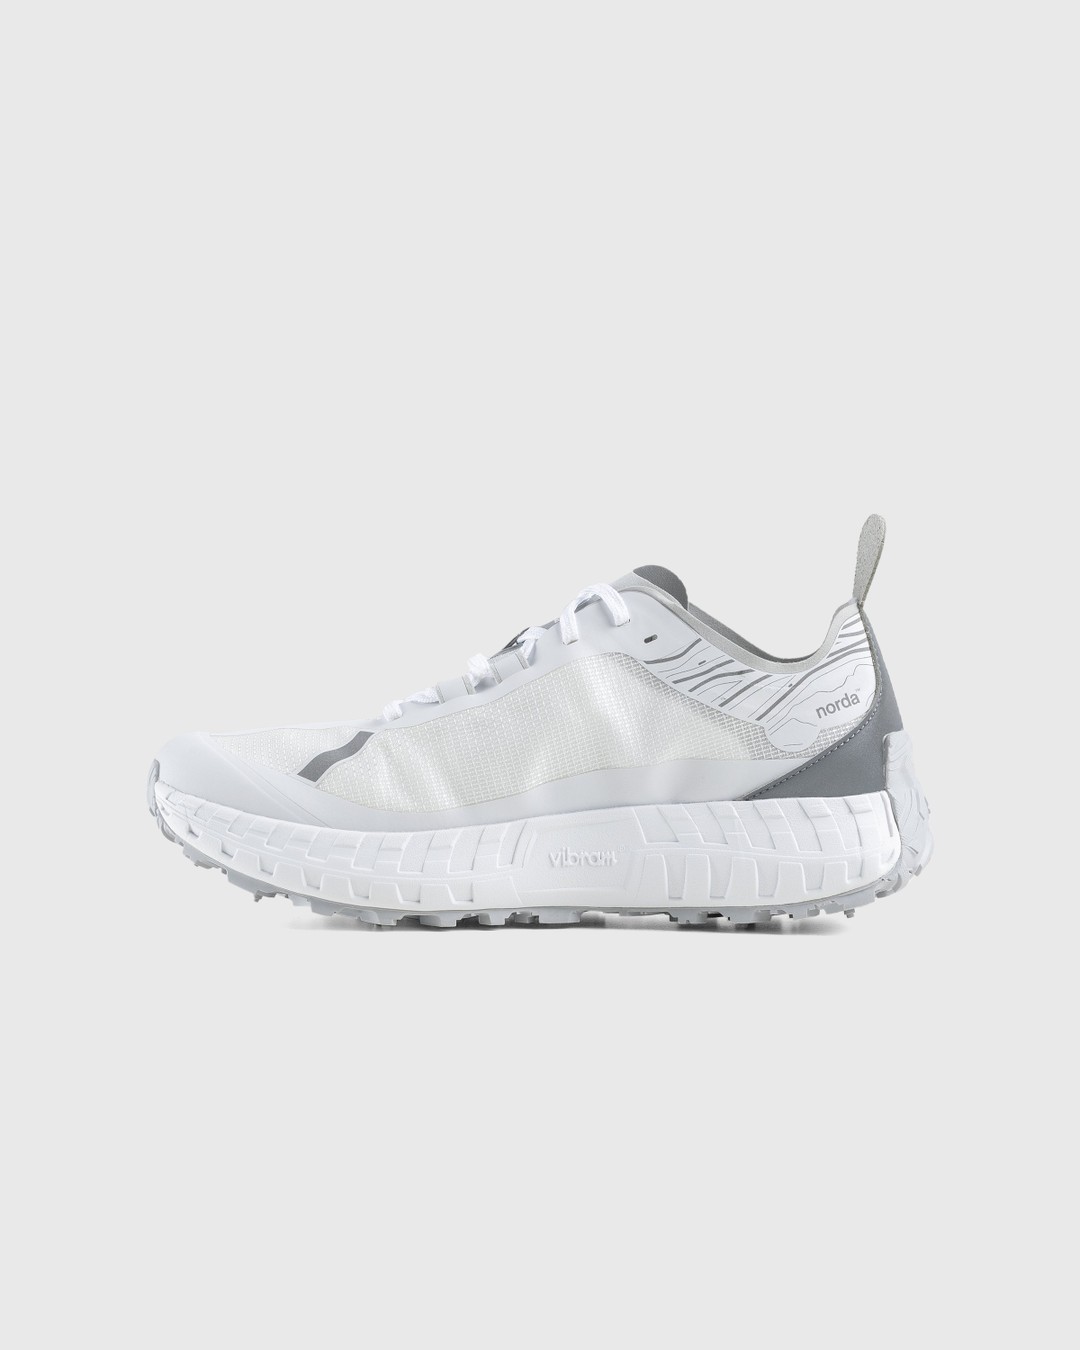 Norda – 001 M White/Grey - Sneakers - White - Image 2